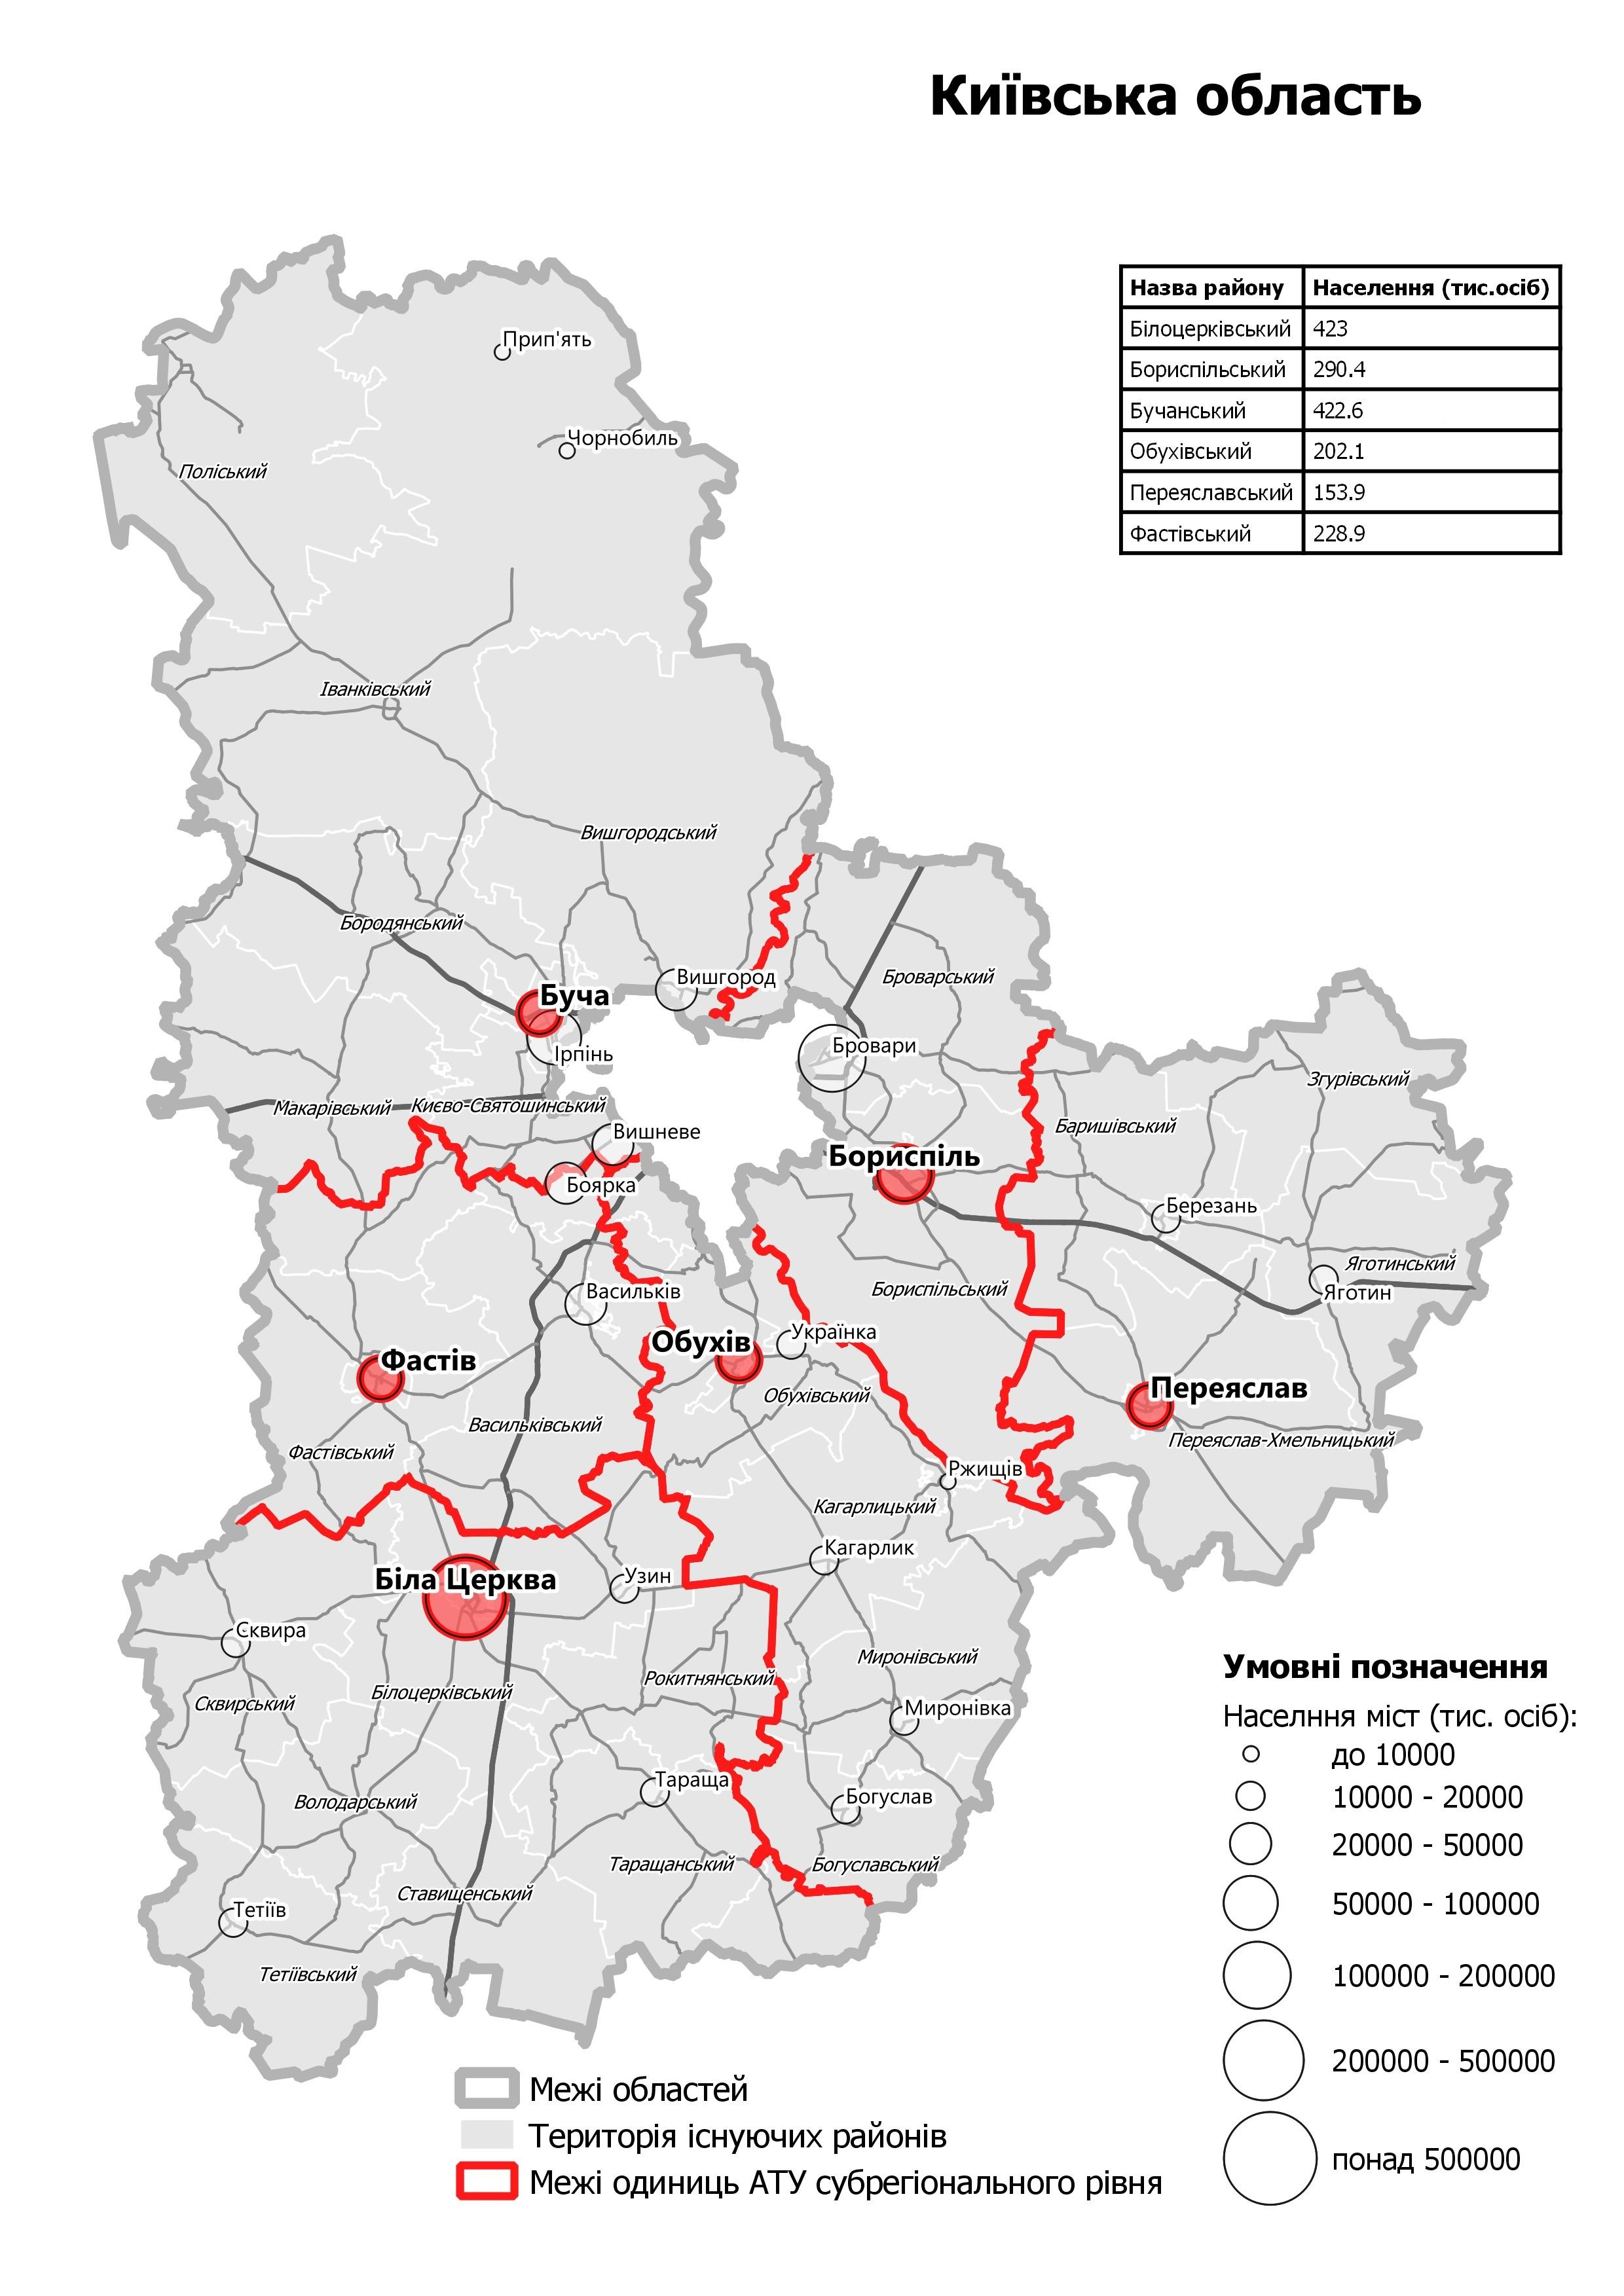 Проект территориального устройства Киевской области